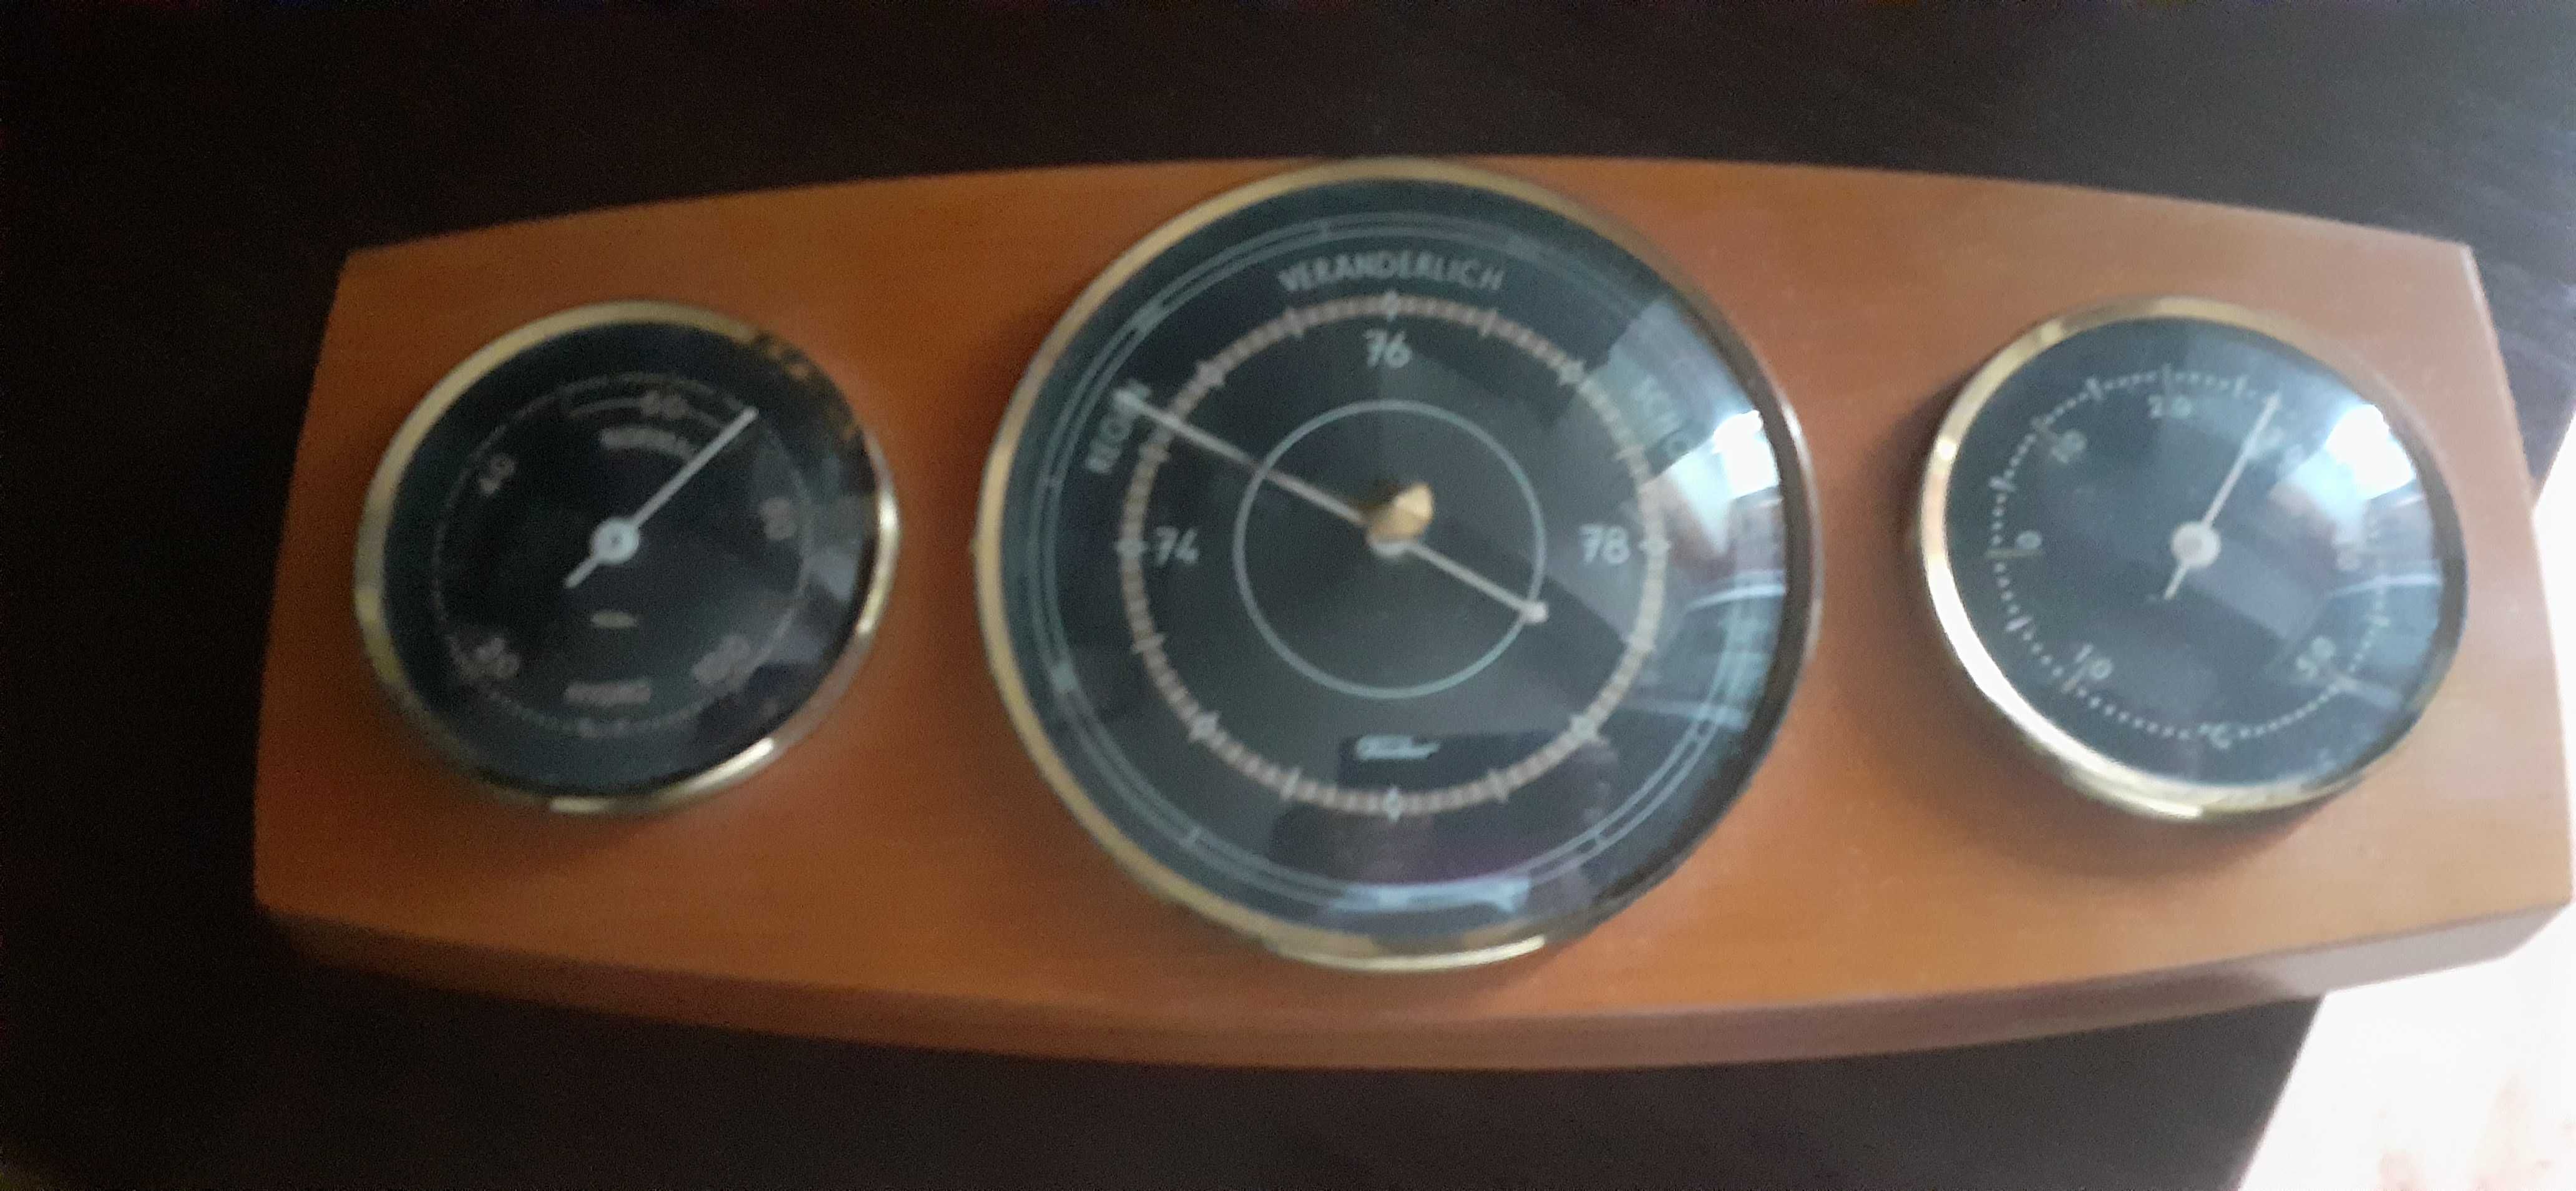 Барометр,гигрометр,термометр, фирма "Fishcer"ГДР 70-егоды